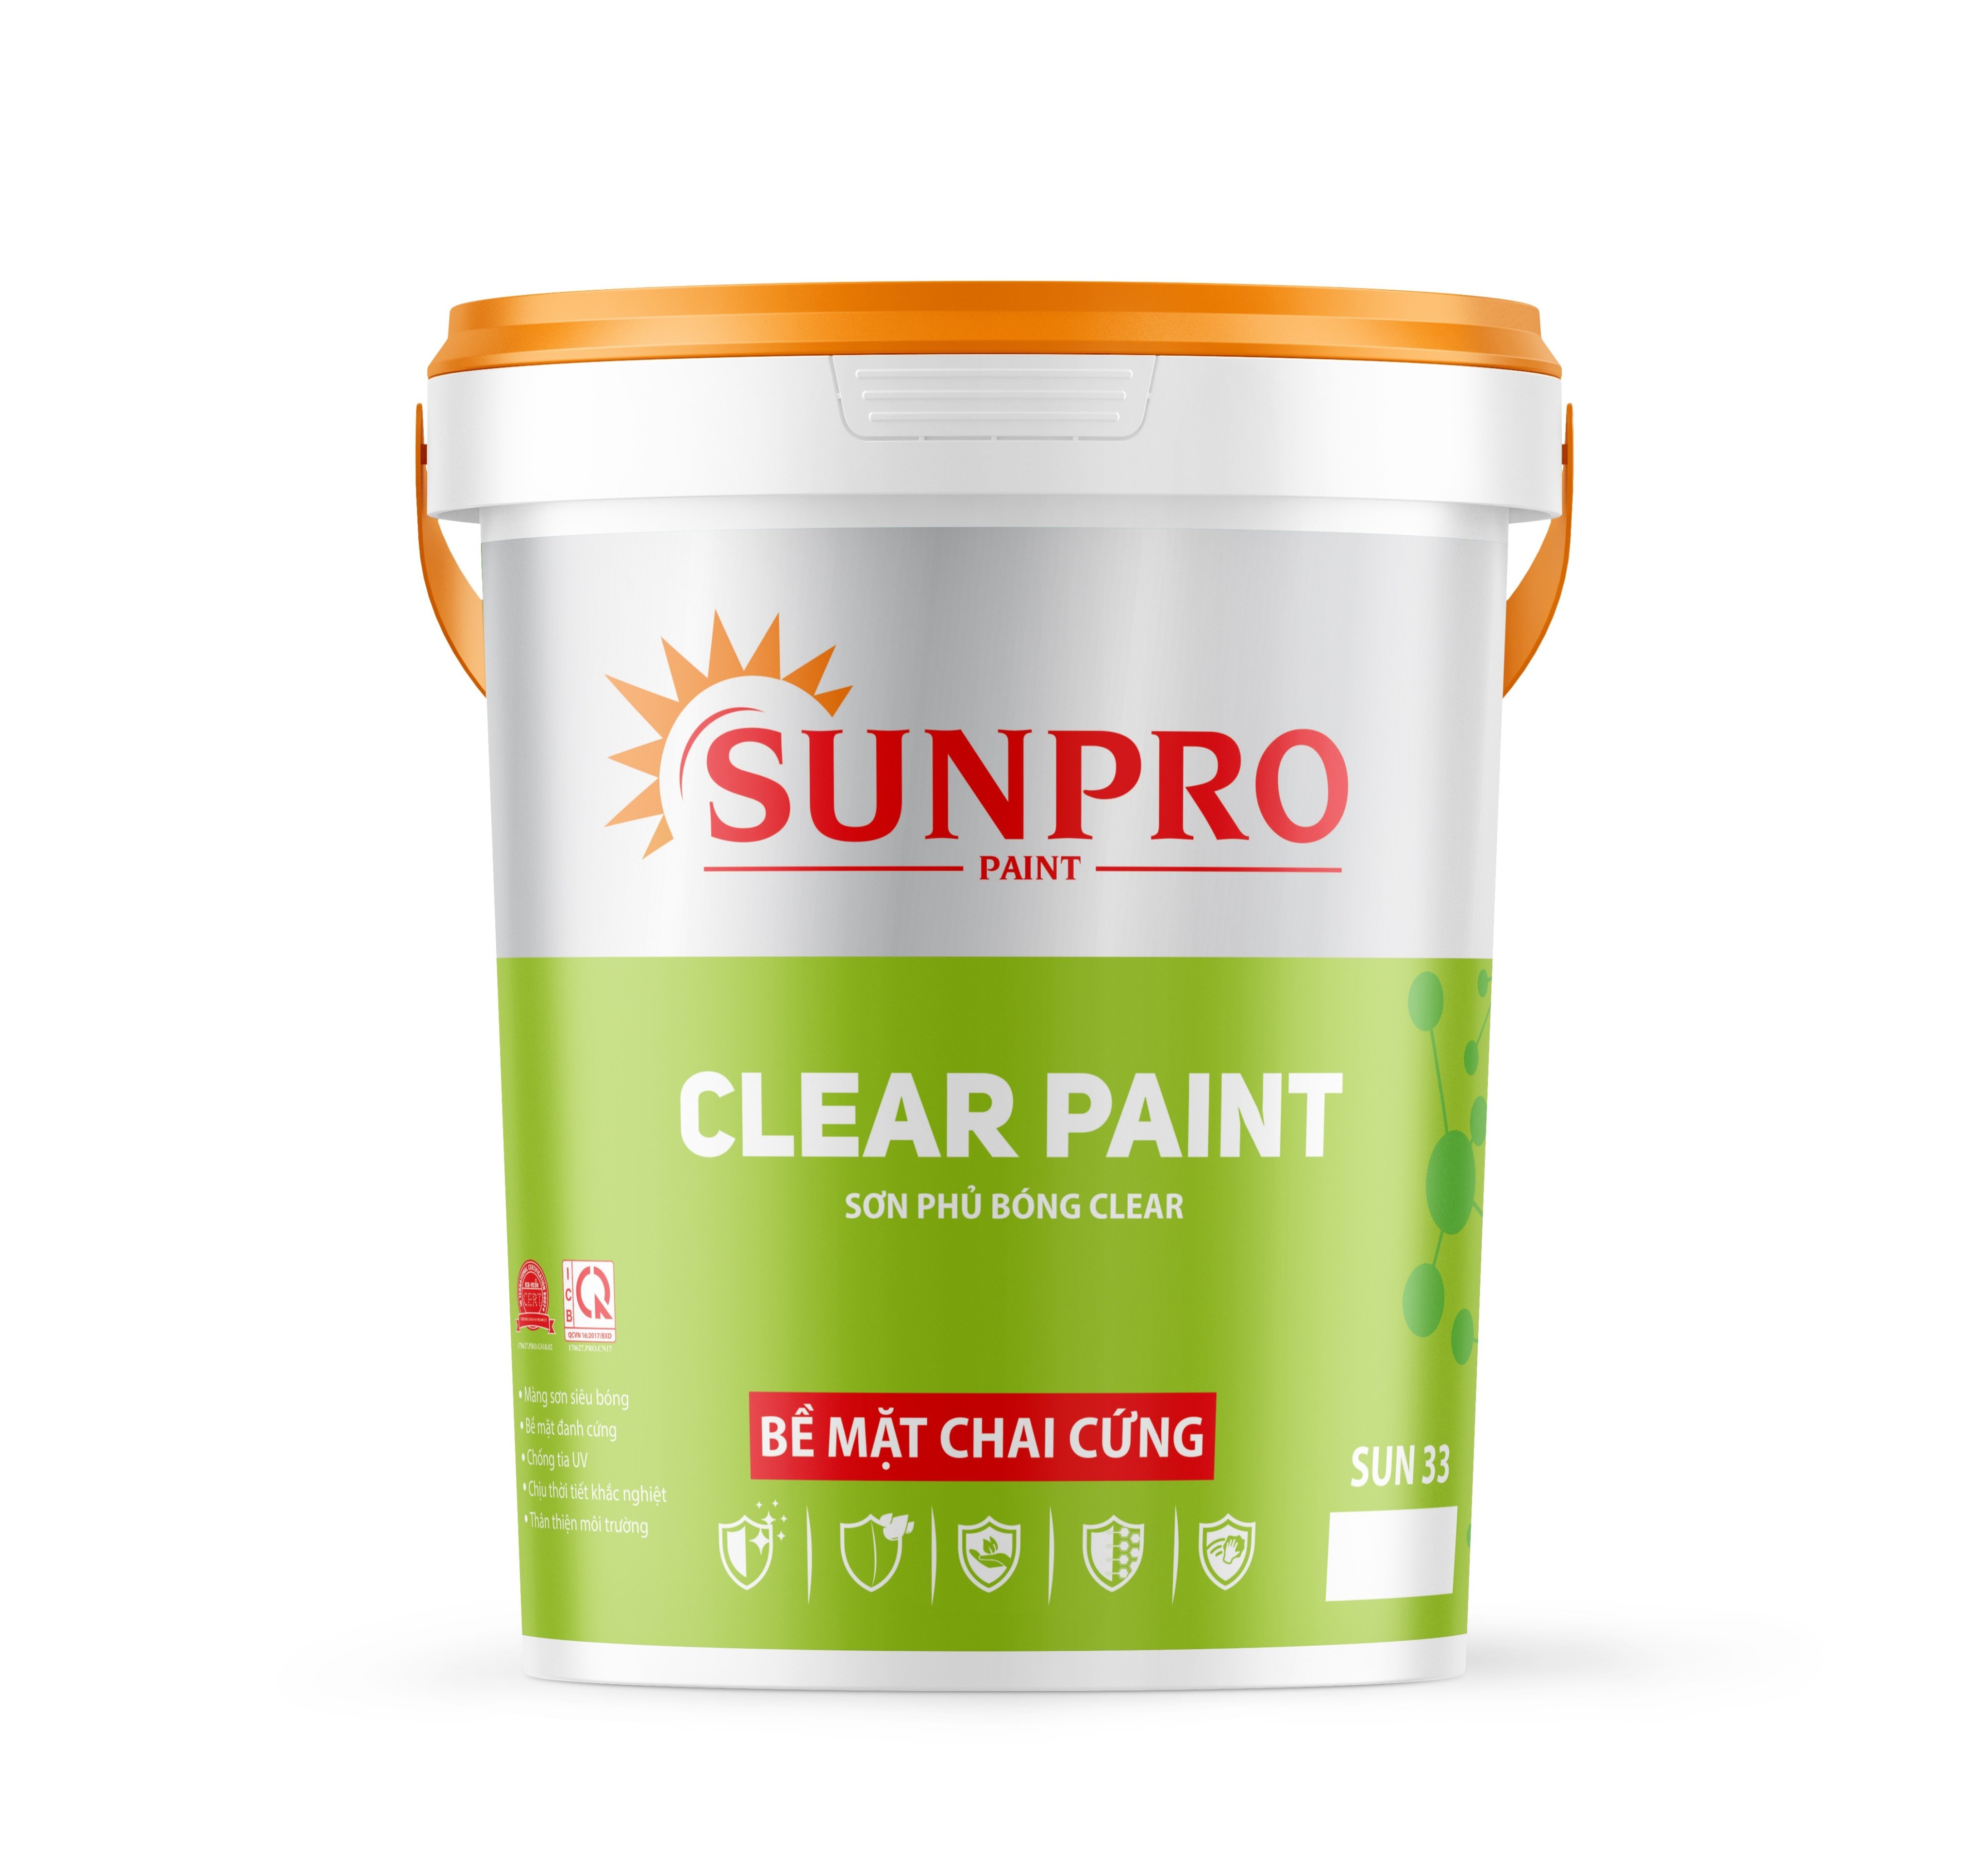 SUN33 - CLEAR PAINT Sơn siêu bóng phủ trang trí Clear